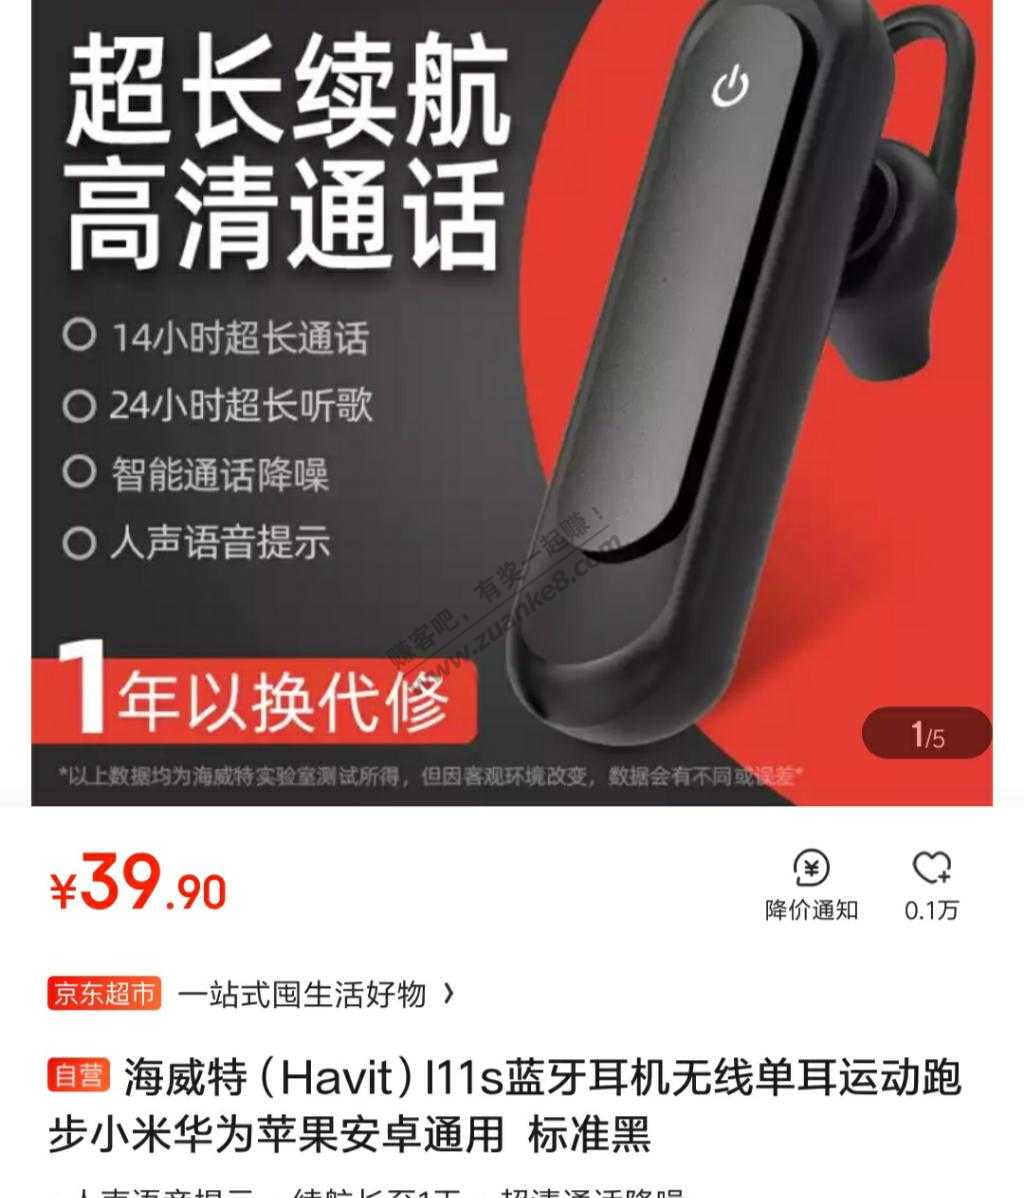 拖延症-30券不能买内存卡-只能9.9买这个蓝牙耳机了-惠小助(52huixz.com)